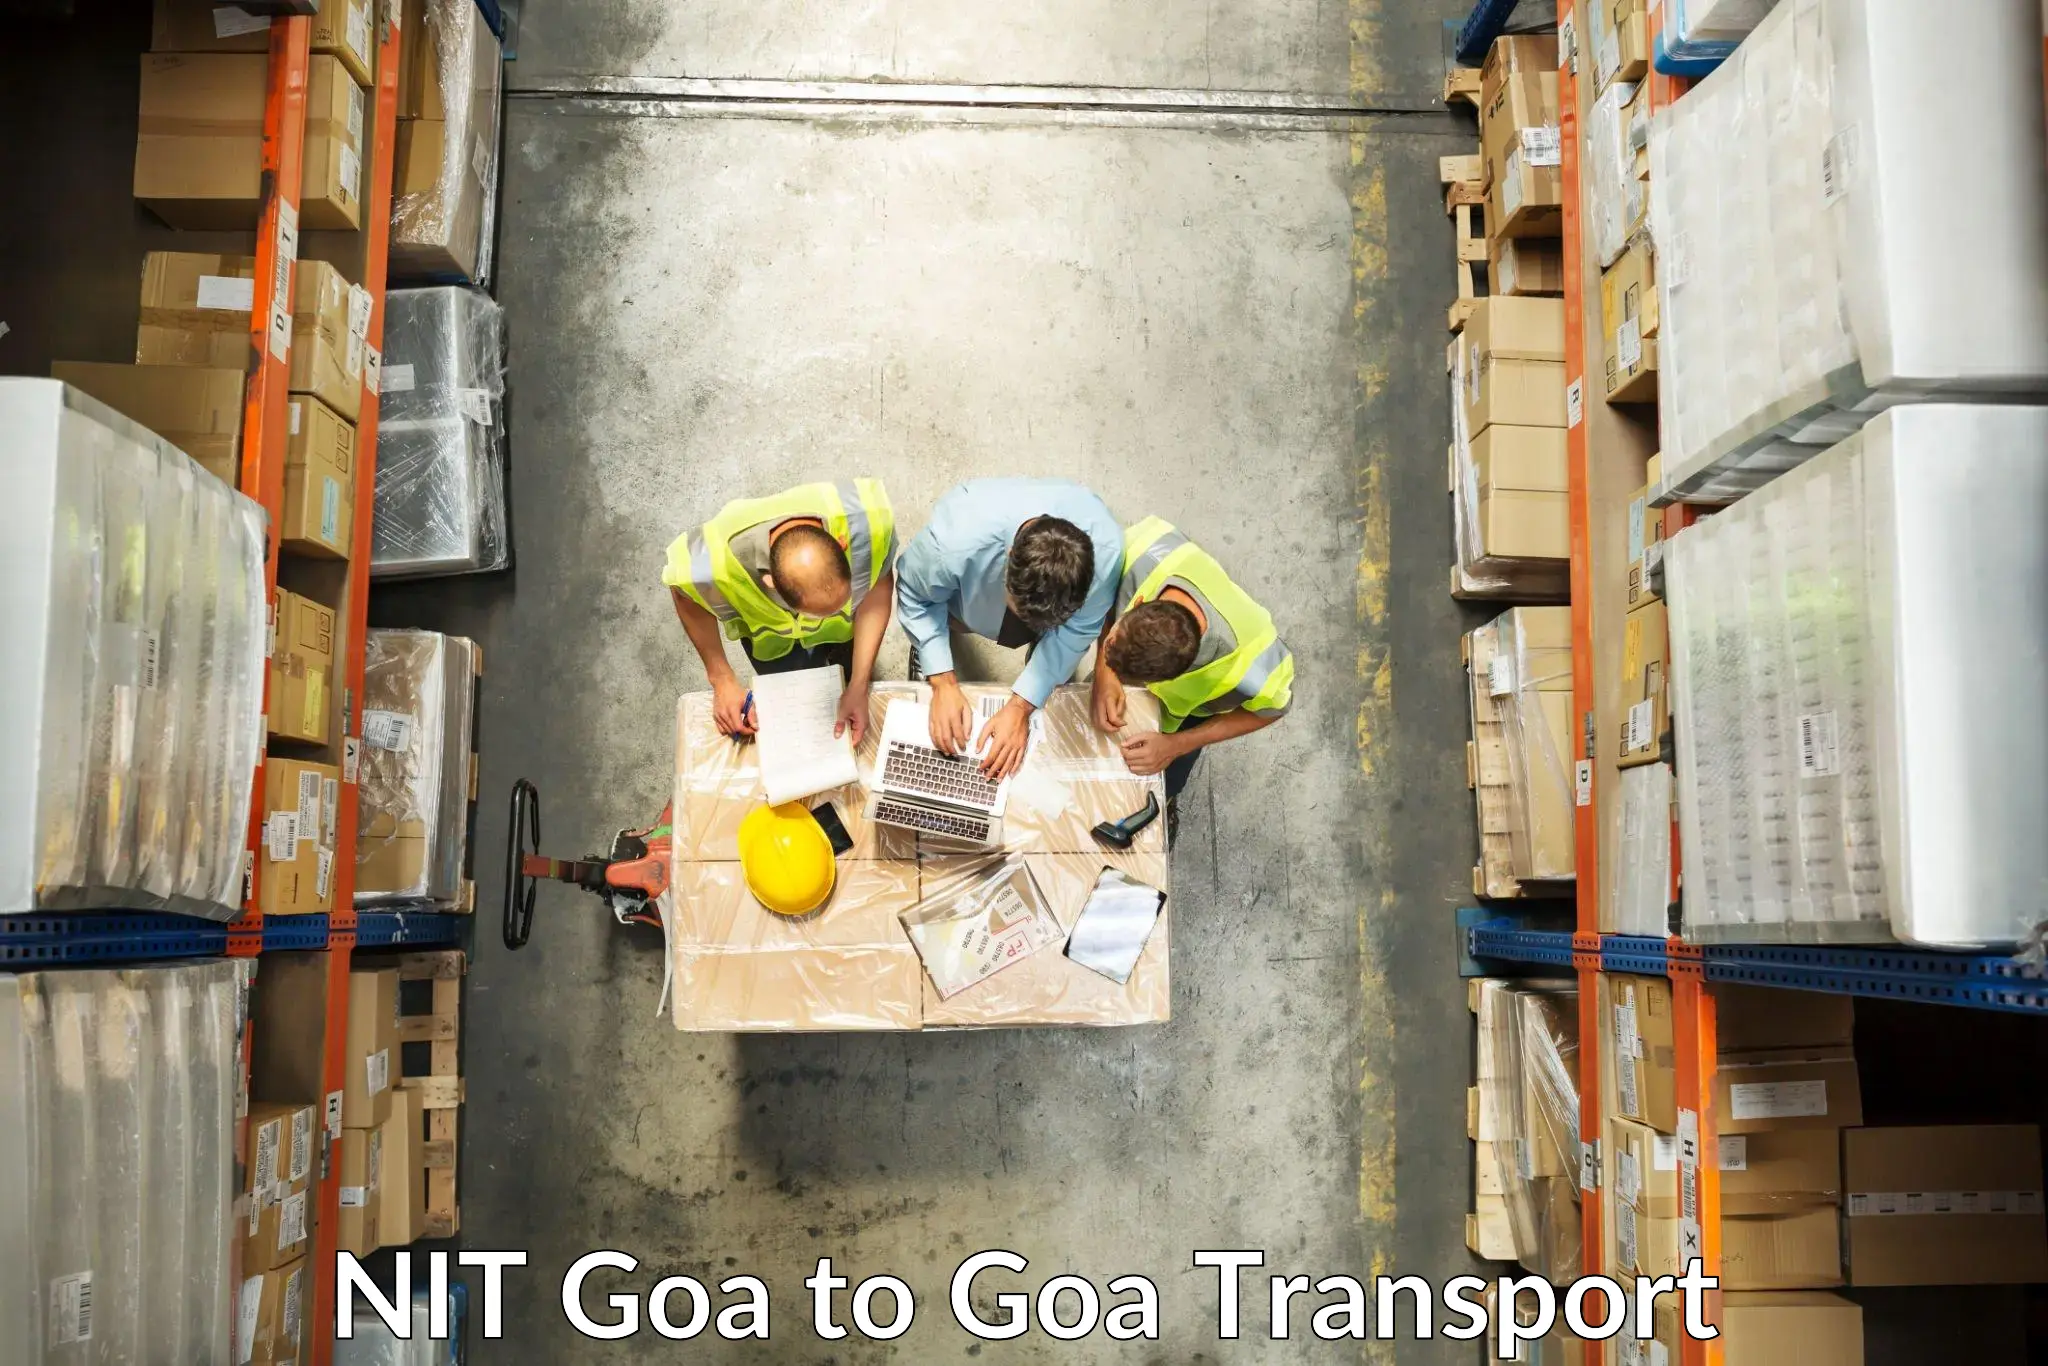 Cargo train transport services NIT Goa to IIT Goa